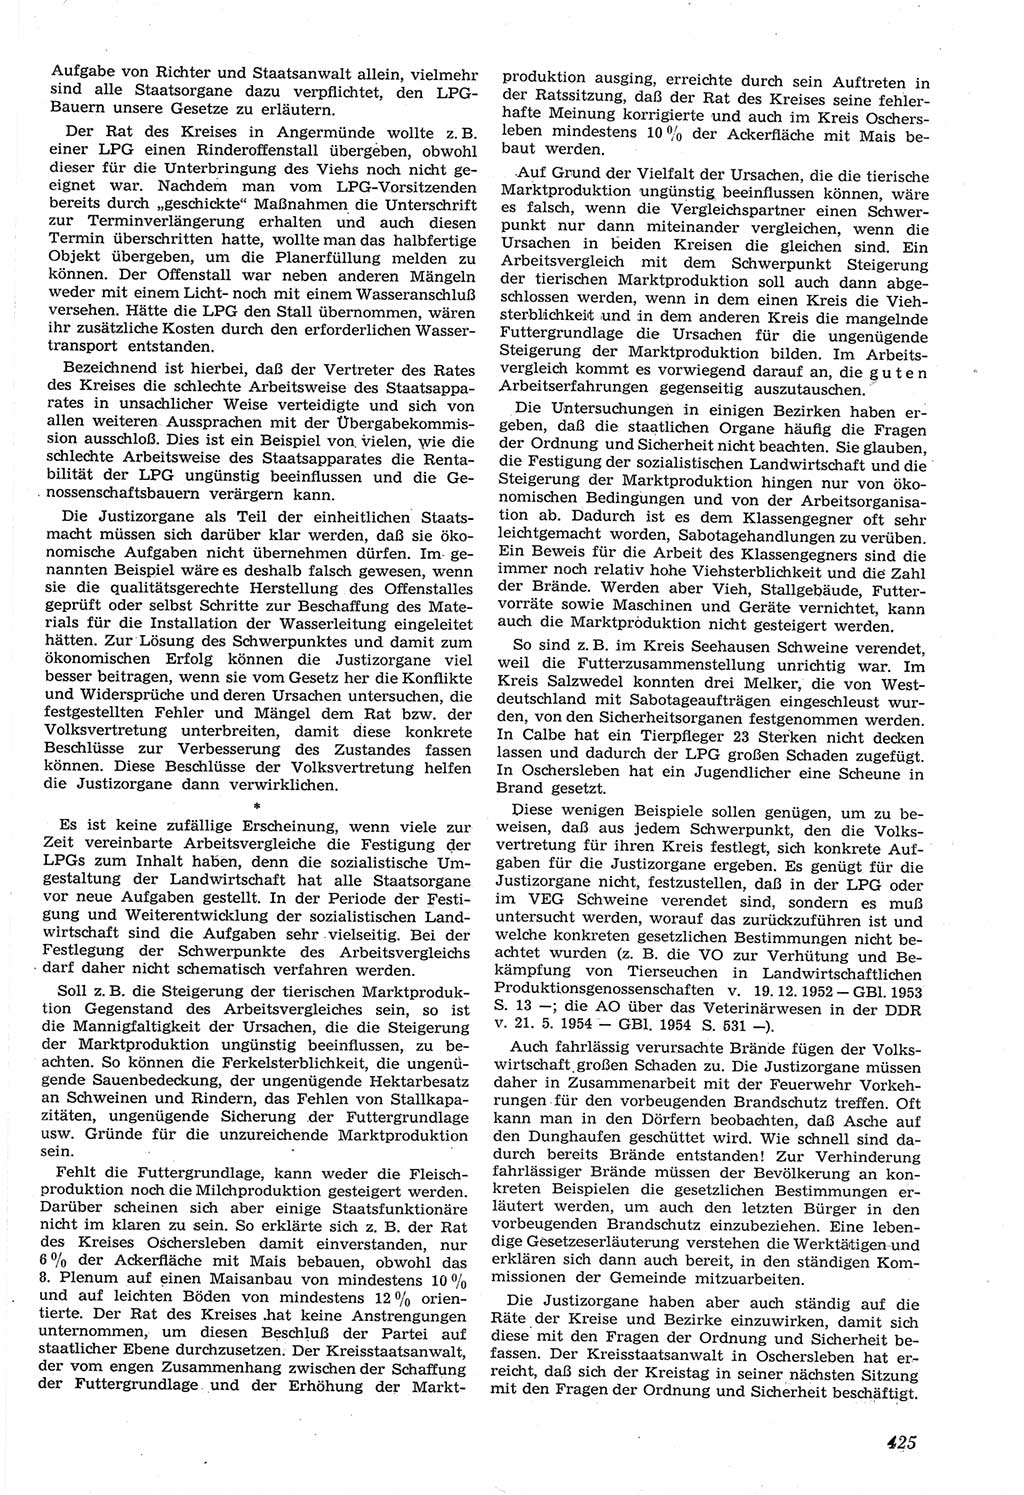 Neue Justiz (NJ), Zeitschrift für Recht und Rechtswissenschaft [Deutsche Demokratische Republik (DDR)], 14. Jahrgang 1960, Seite 425 (NJ DDR 1960, S. 425)